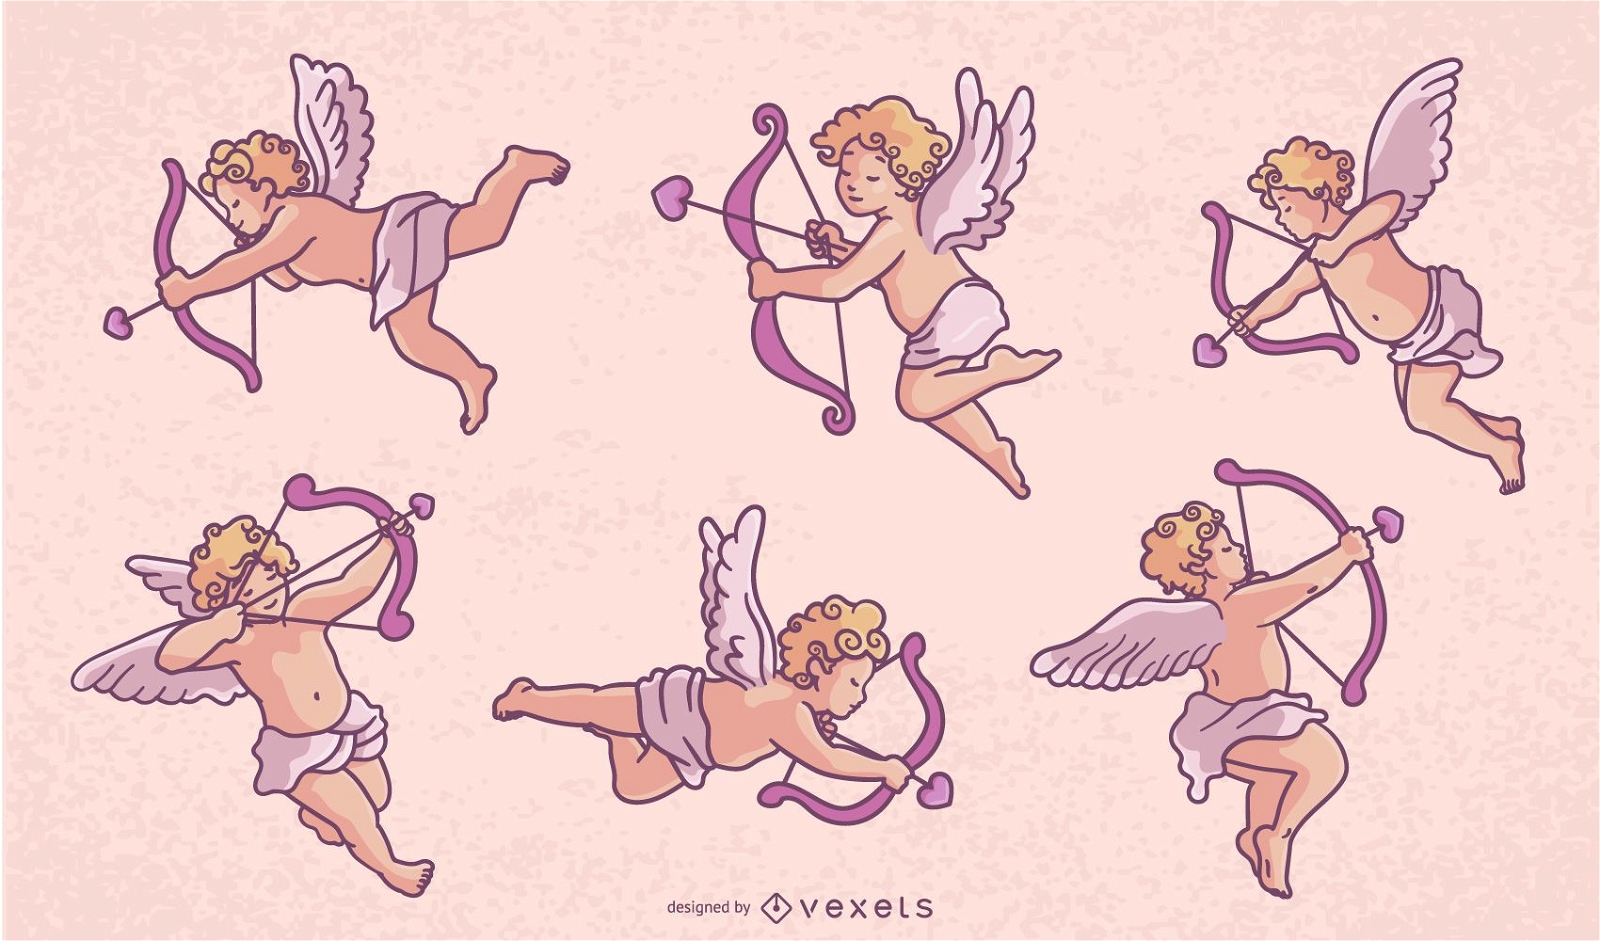 Paquete de diseño de personajes de Cupido